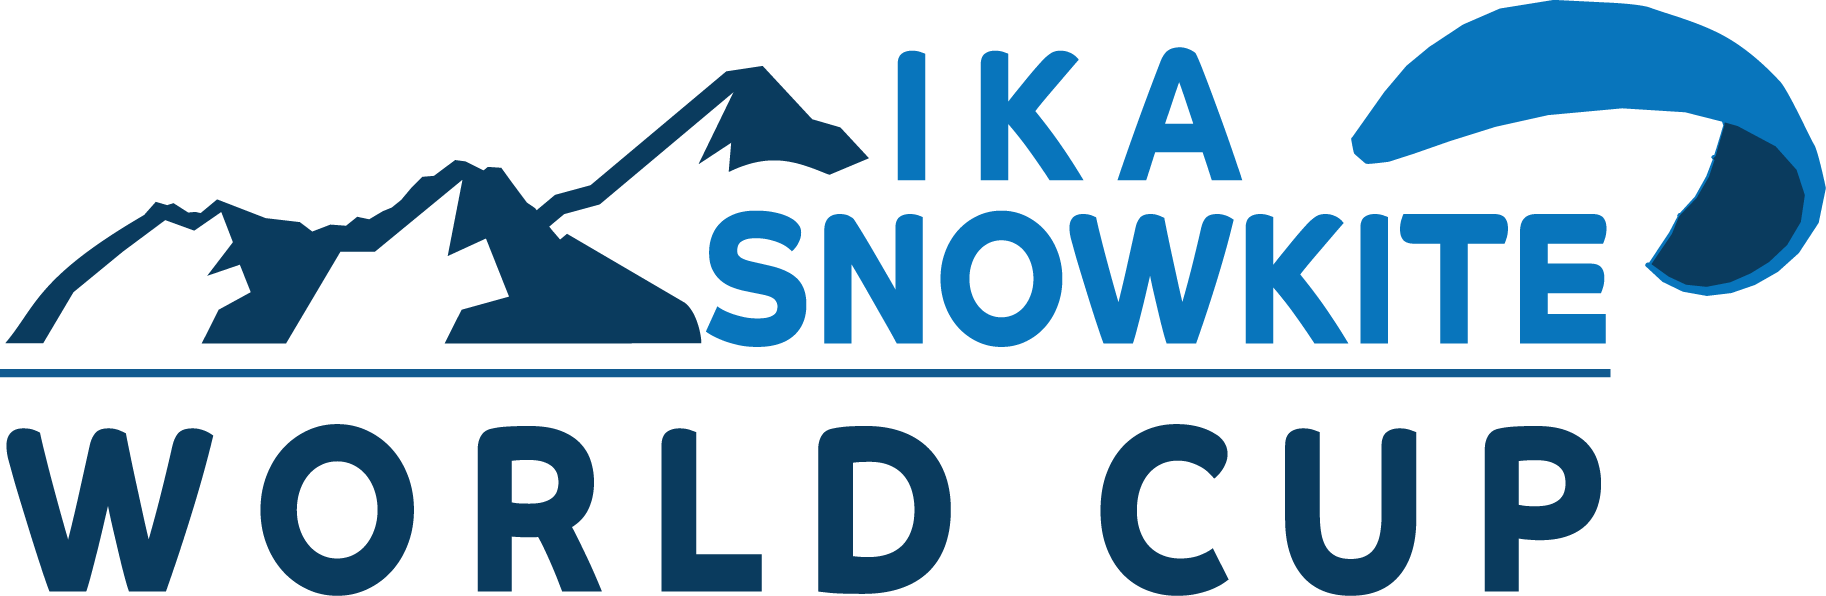 The IKA SnowKite WorldCup